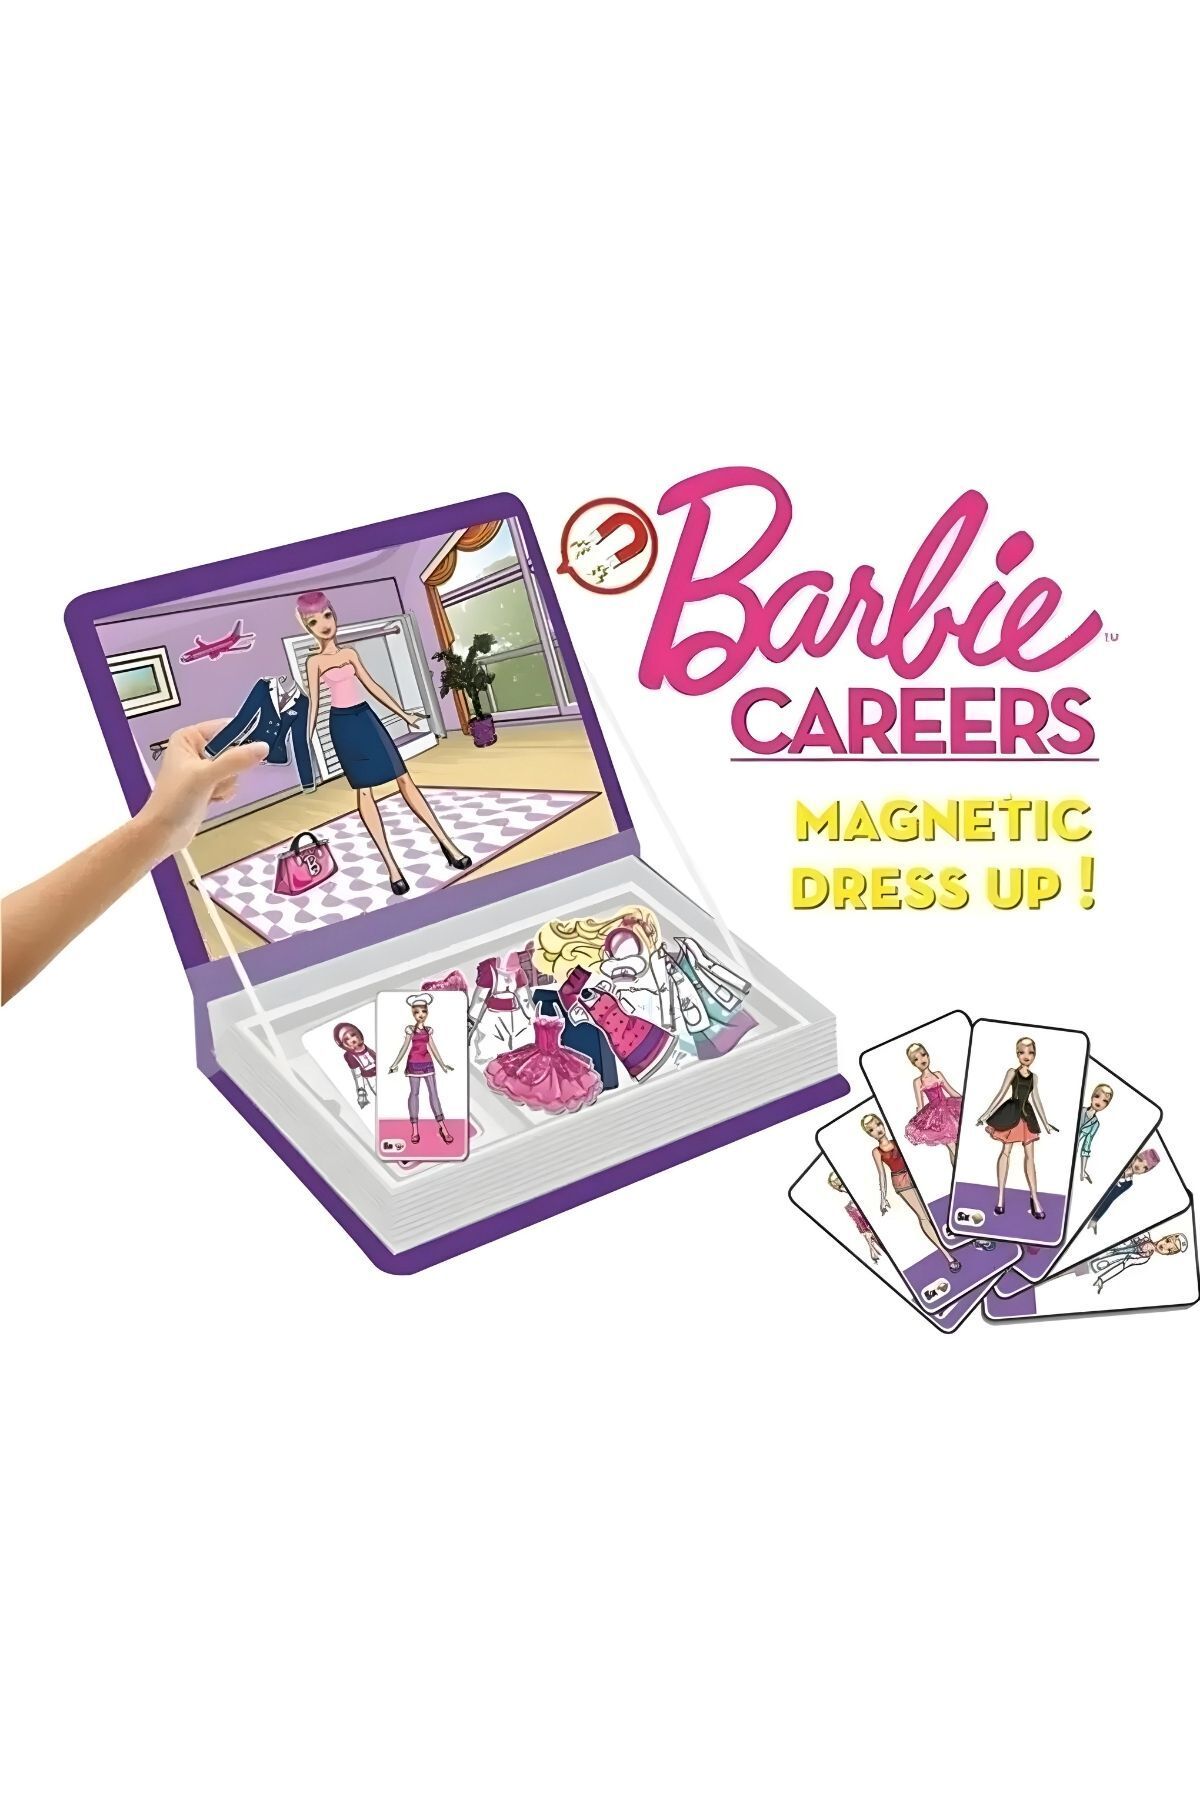 Apexma Manyetik Barbie Kariyer Kıyafet Giydirme Oyun Seti - Eğlenceli Magnet Career Elbise Giydirme Oyunu